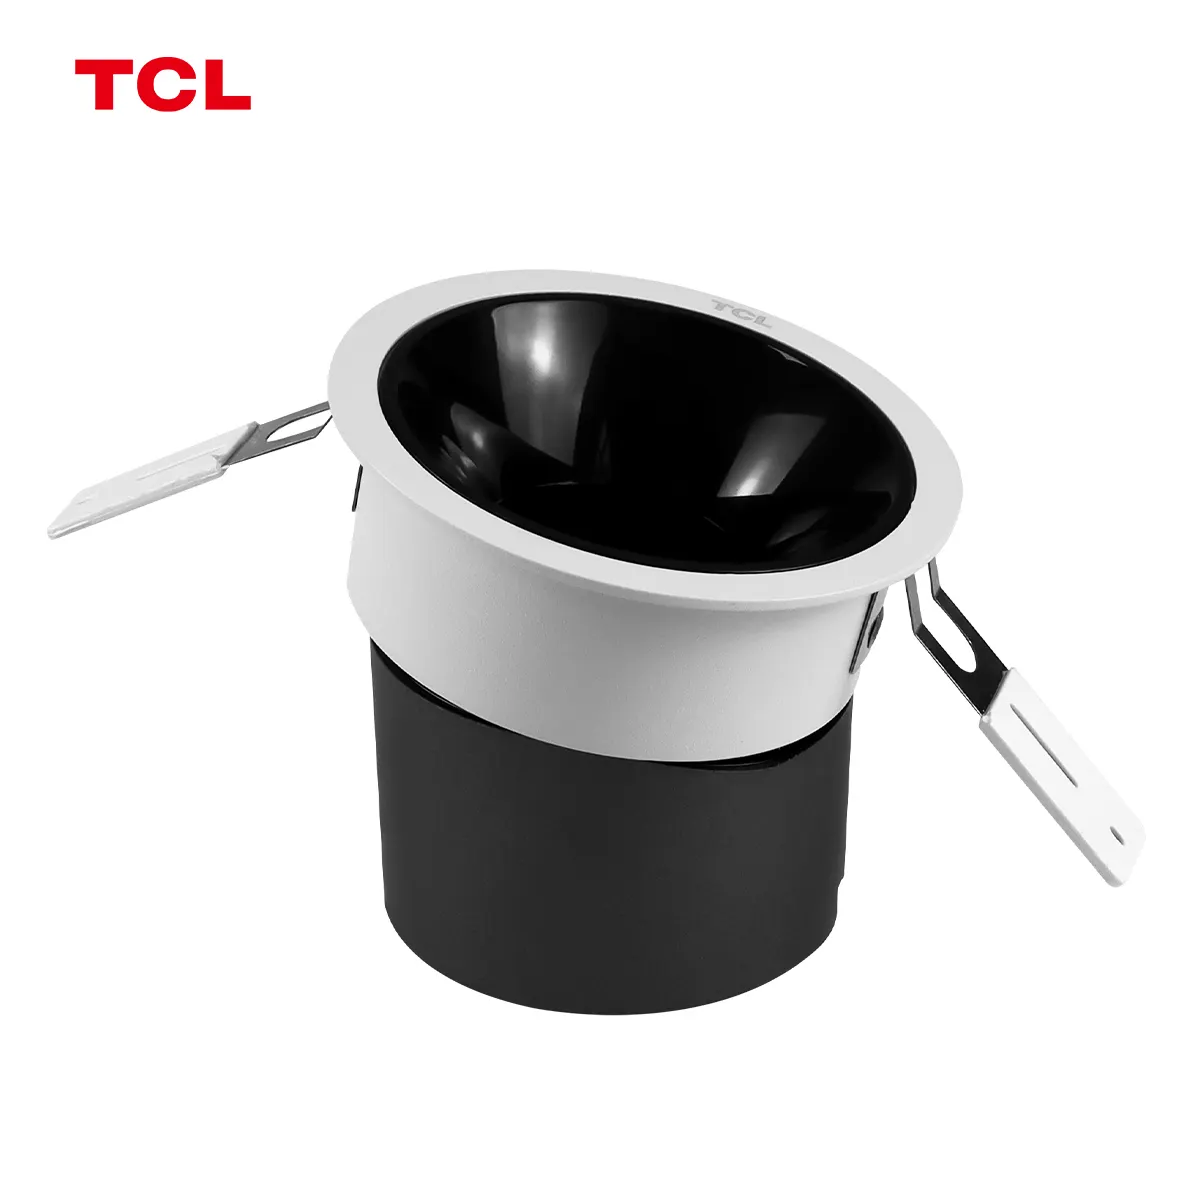 TCL 9W cri90 anti-reflexo spotlights embutidos em alumínio preto para iluminação doméstica sala de estar